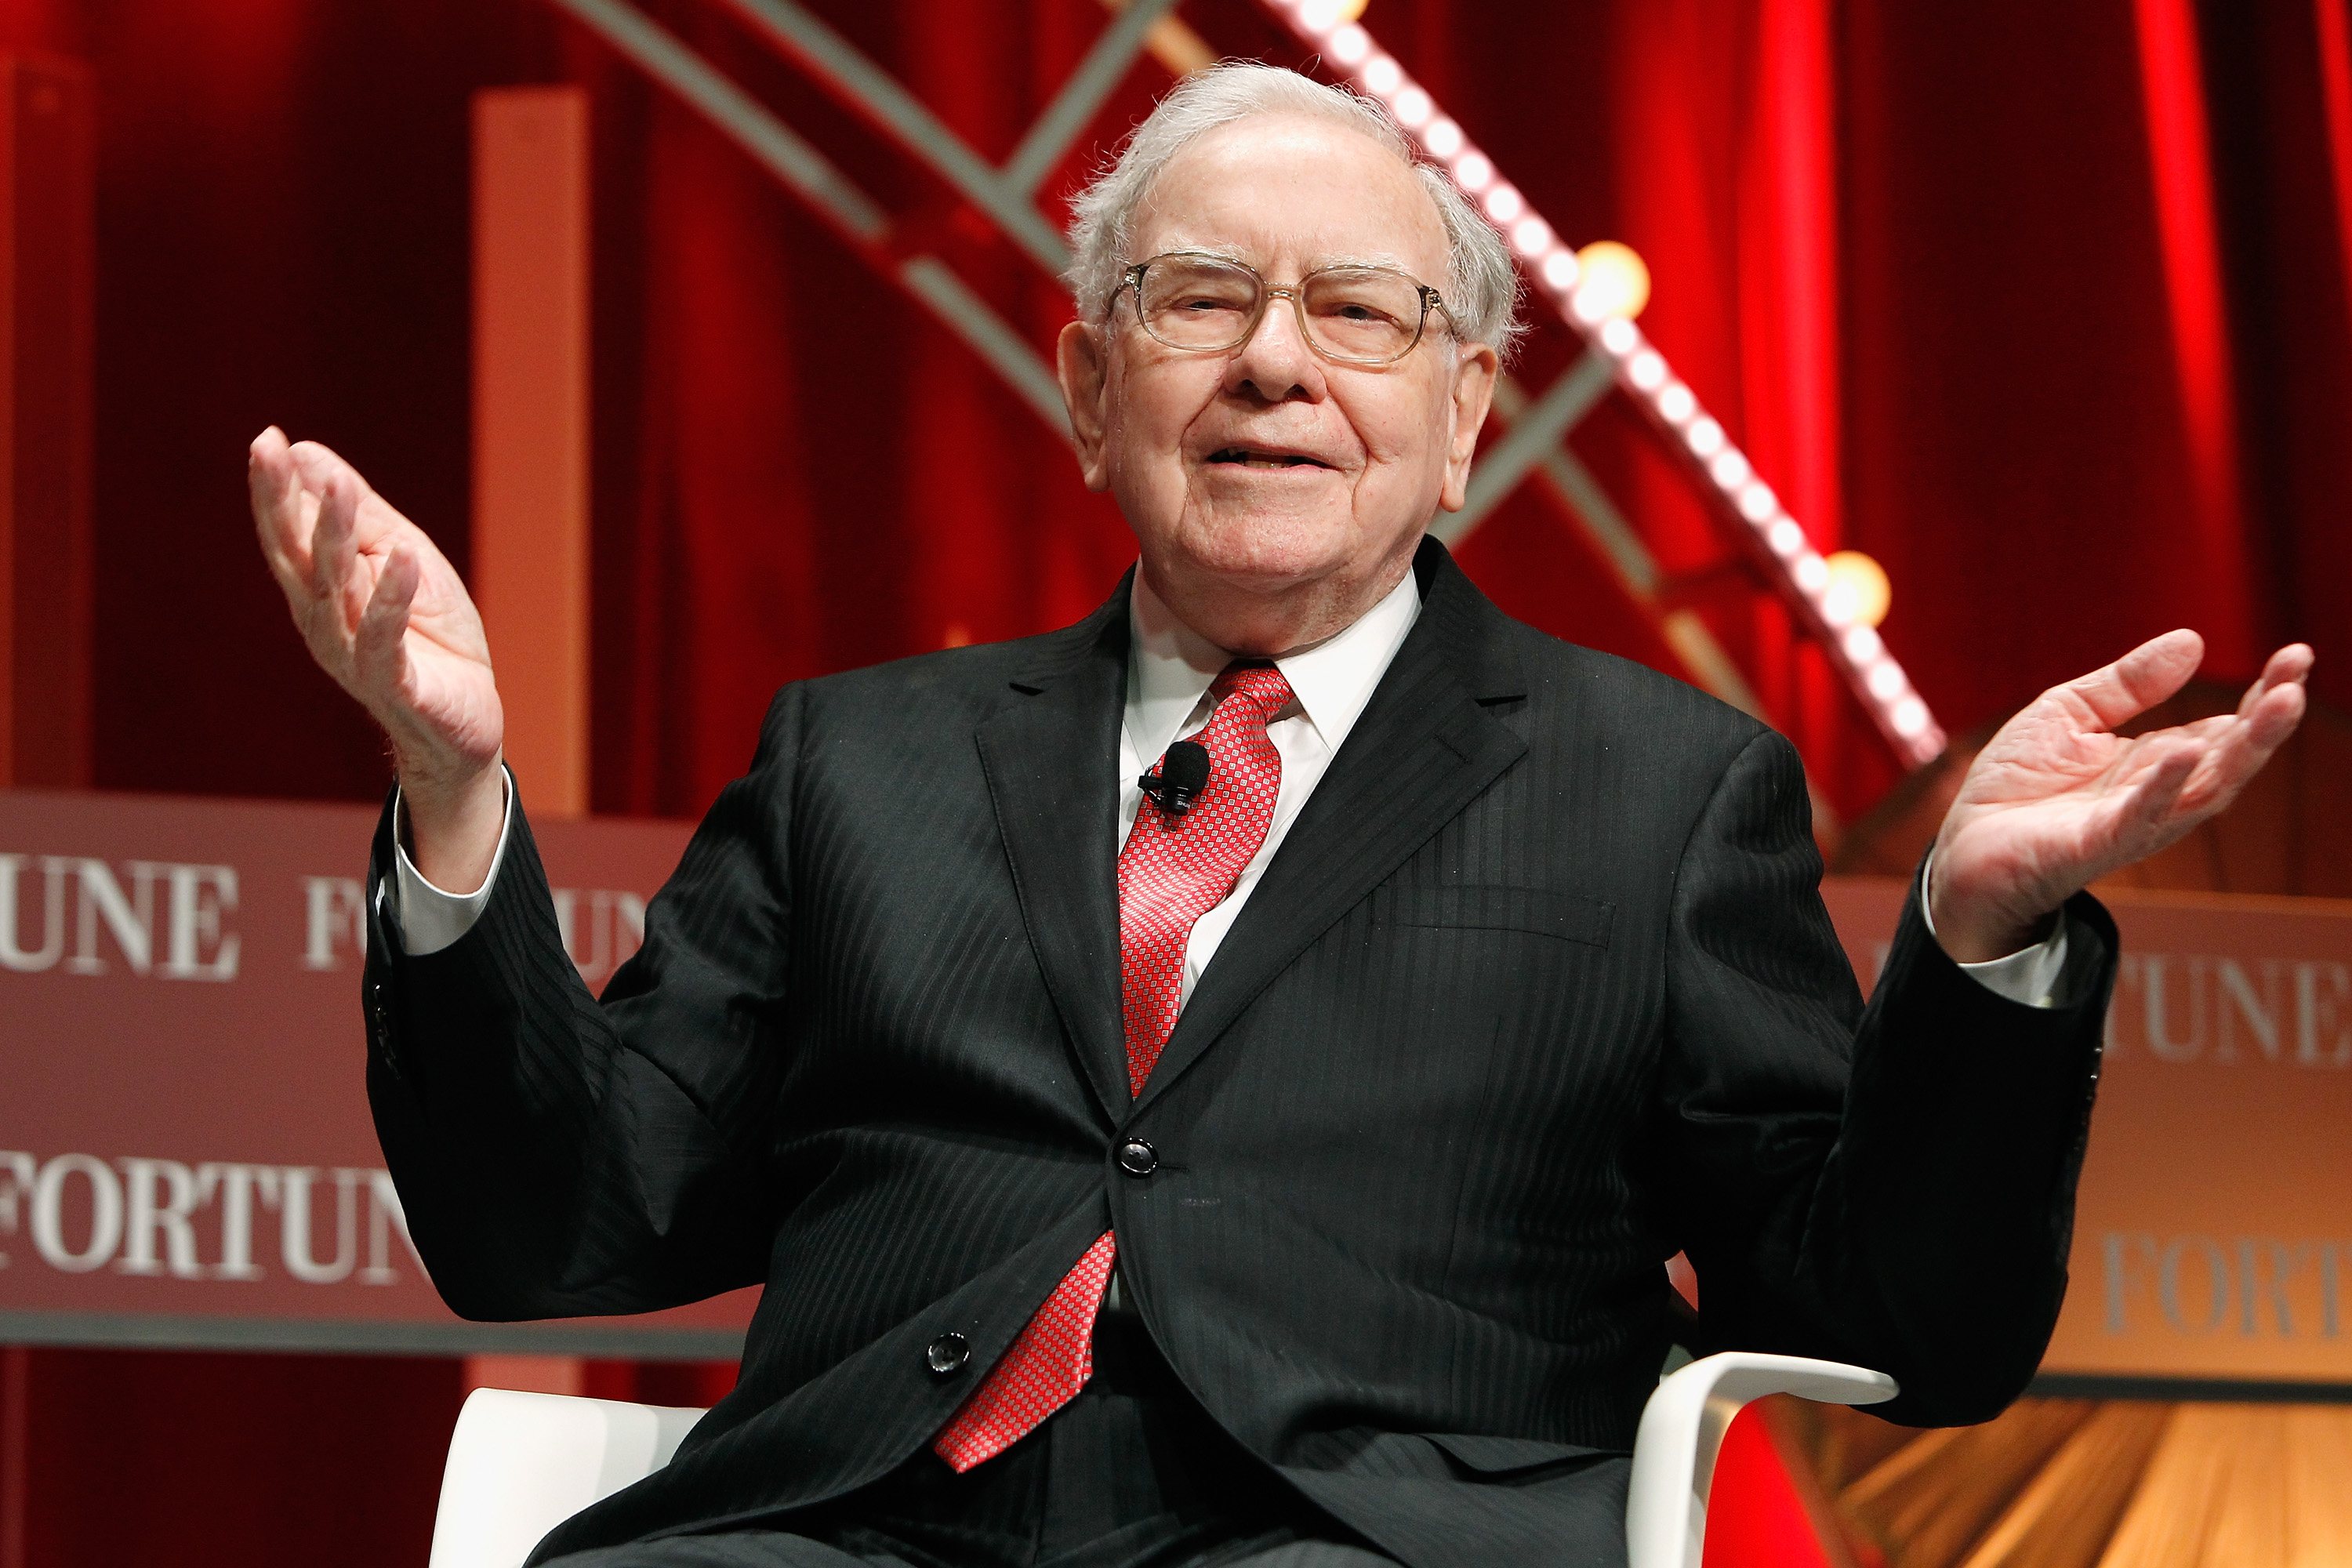 Warren Buffett March Madness odds